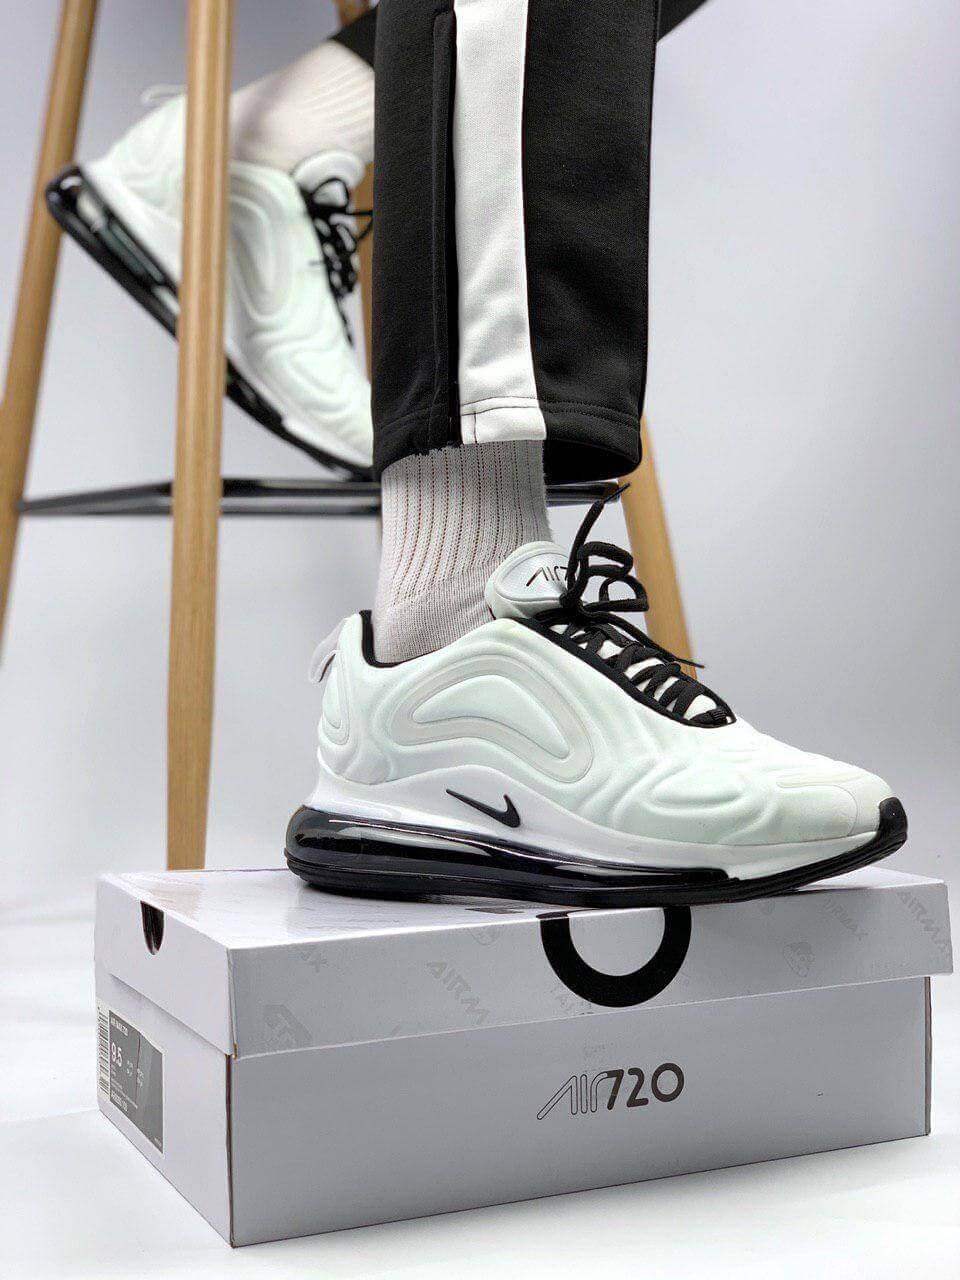 Білі кросівки на балоні Nike Air Max 720 White (Найк Аір Макс 720) жіночі і чоловічі розміри